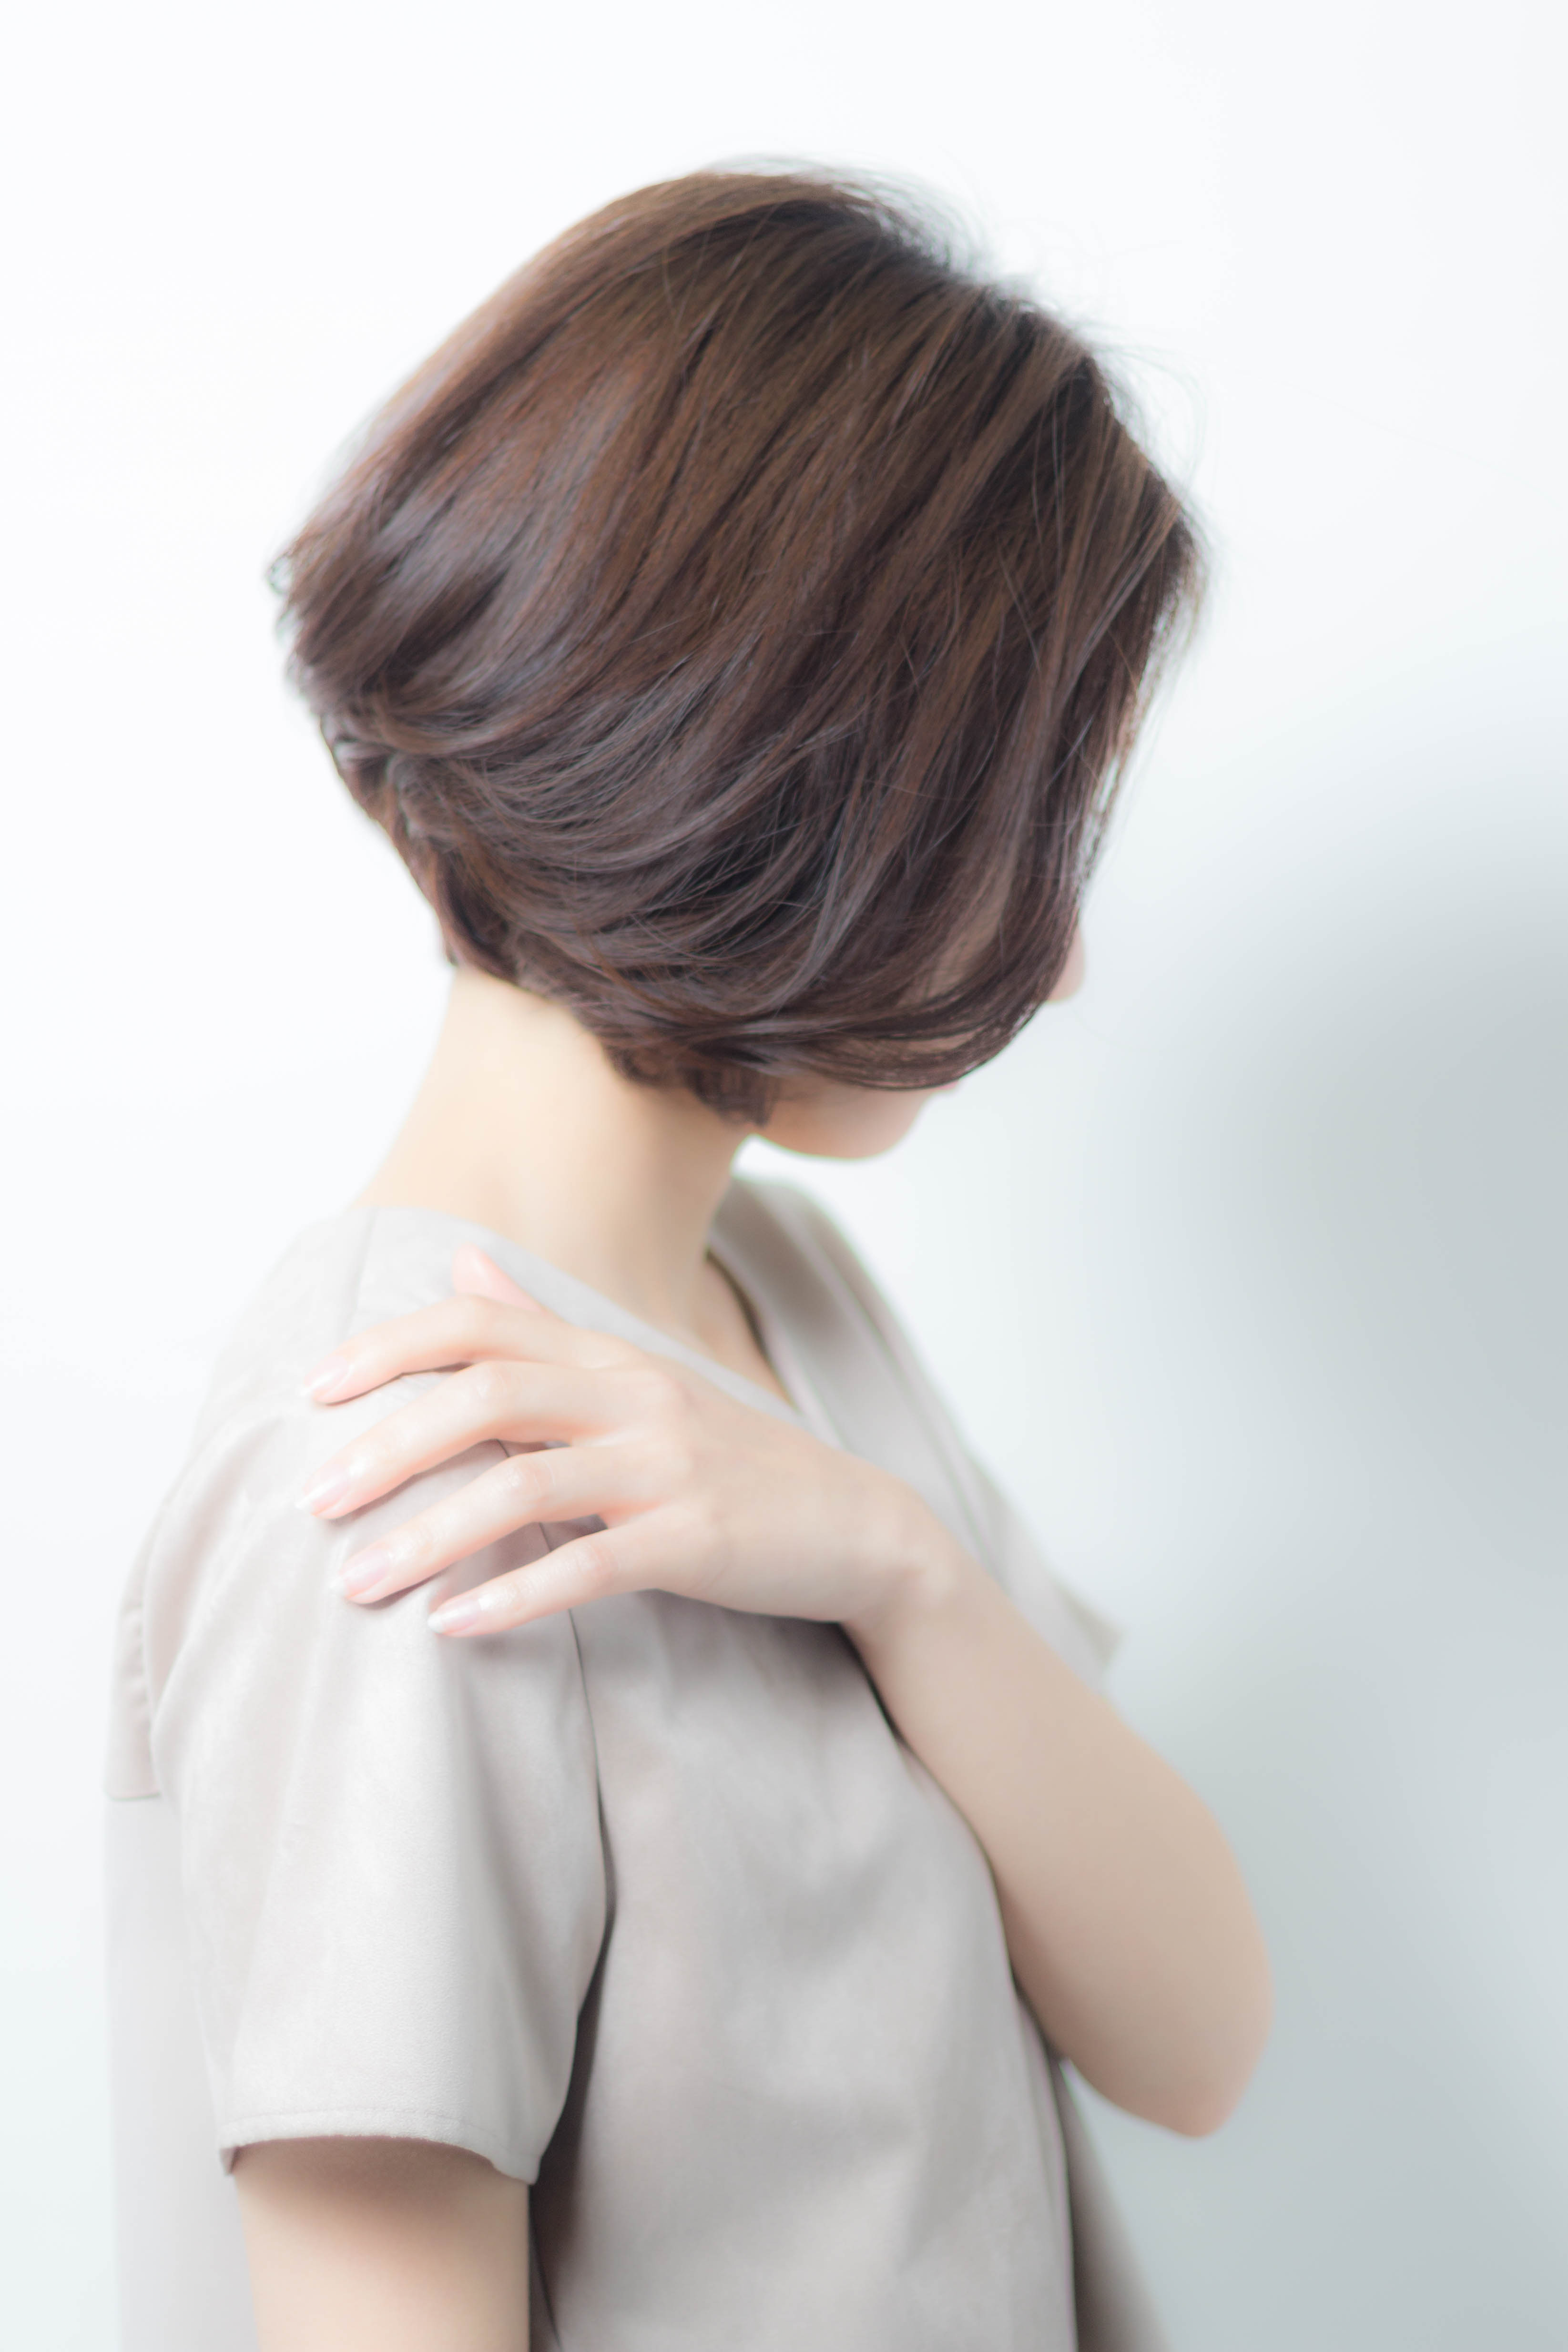 22年秋 40代の髪型のお悩みを 素敵に生かすボブのヘアカタログ 似合わせカットが上手い東京の美容師 美容室minx銀座 蛭田のブログ